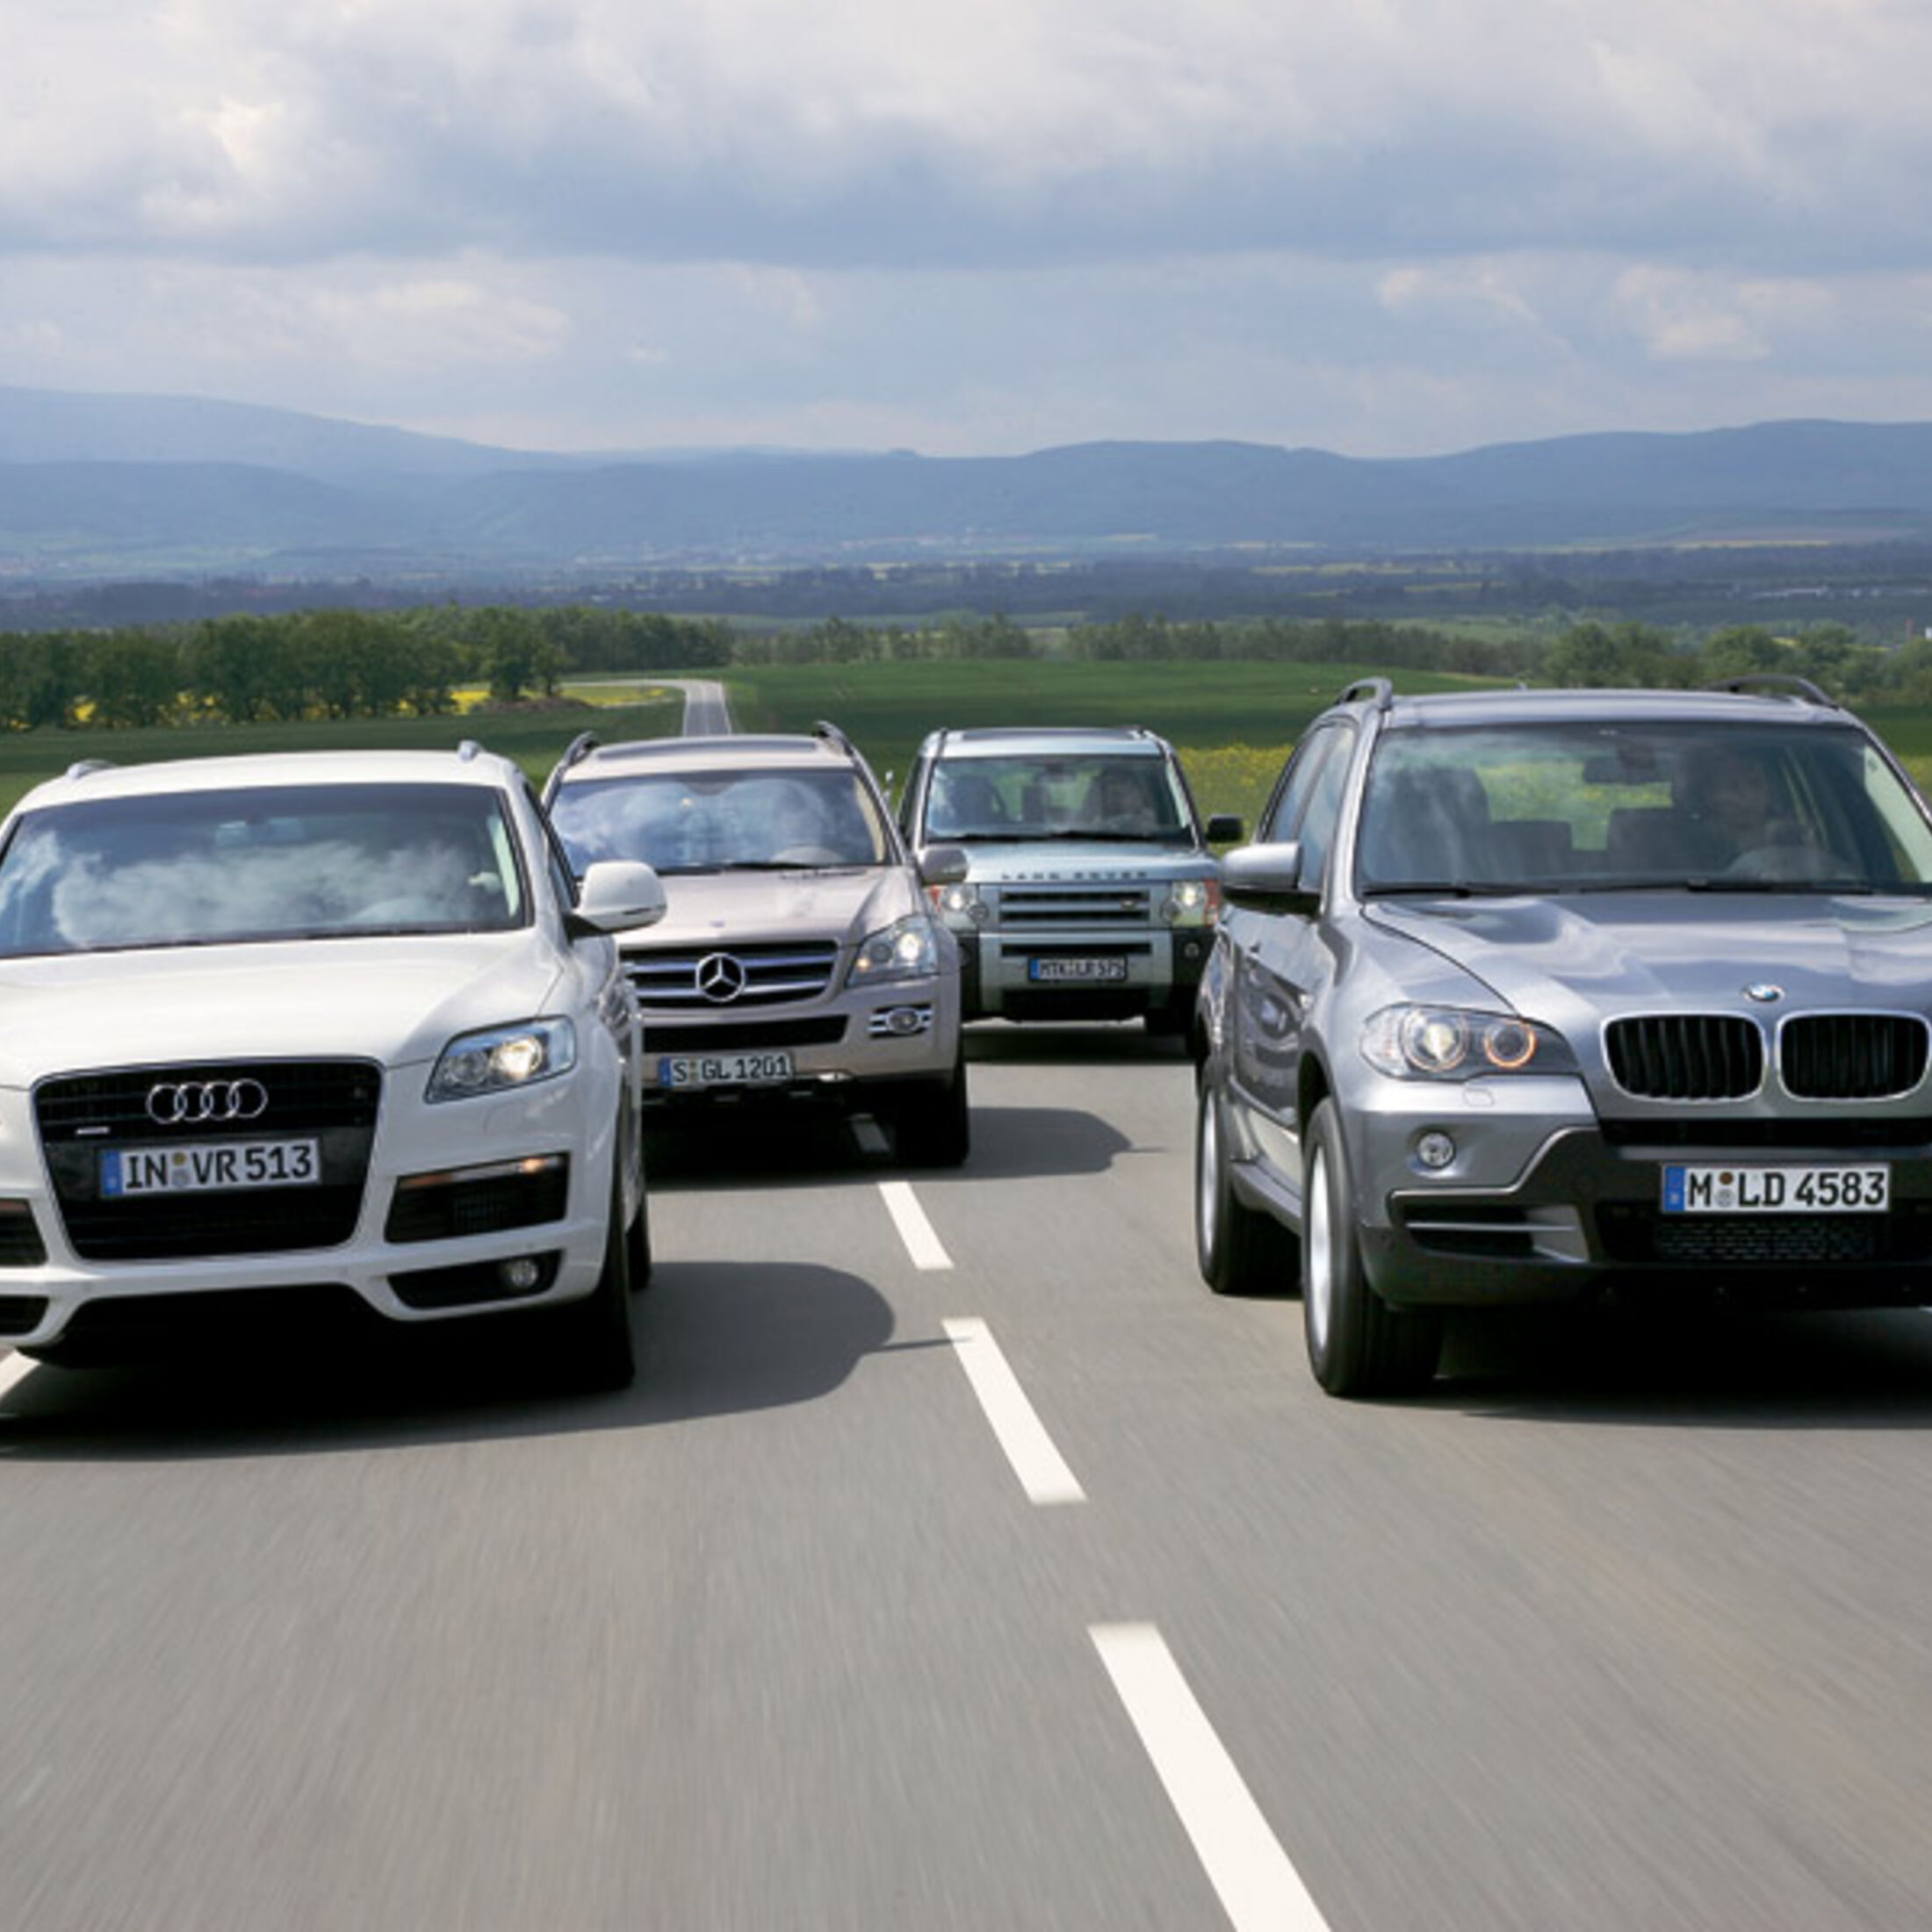 Vergleichstest: Audi Q7 3.0 TDI, Mercedes GL 320 CDI, Land Rover Discovery  TDV6 und BMW x5 3.0d: Die Giganten